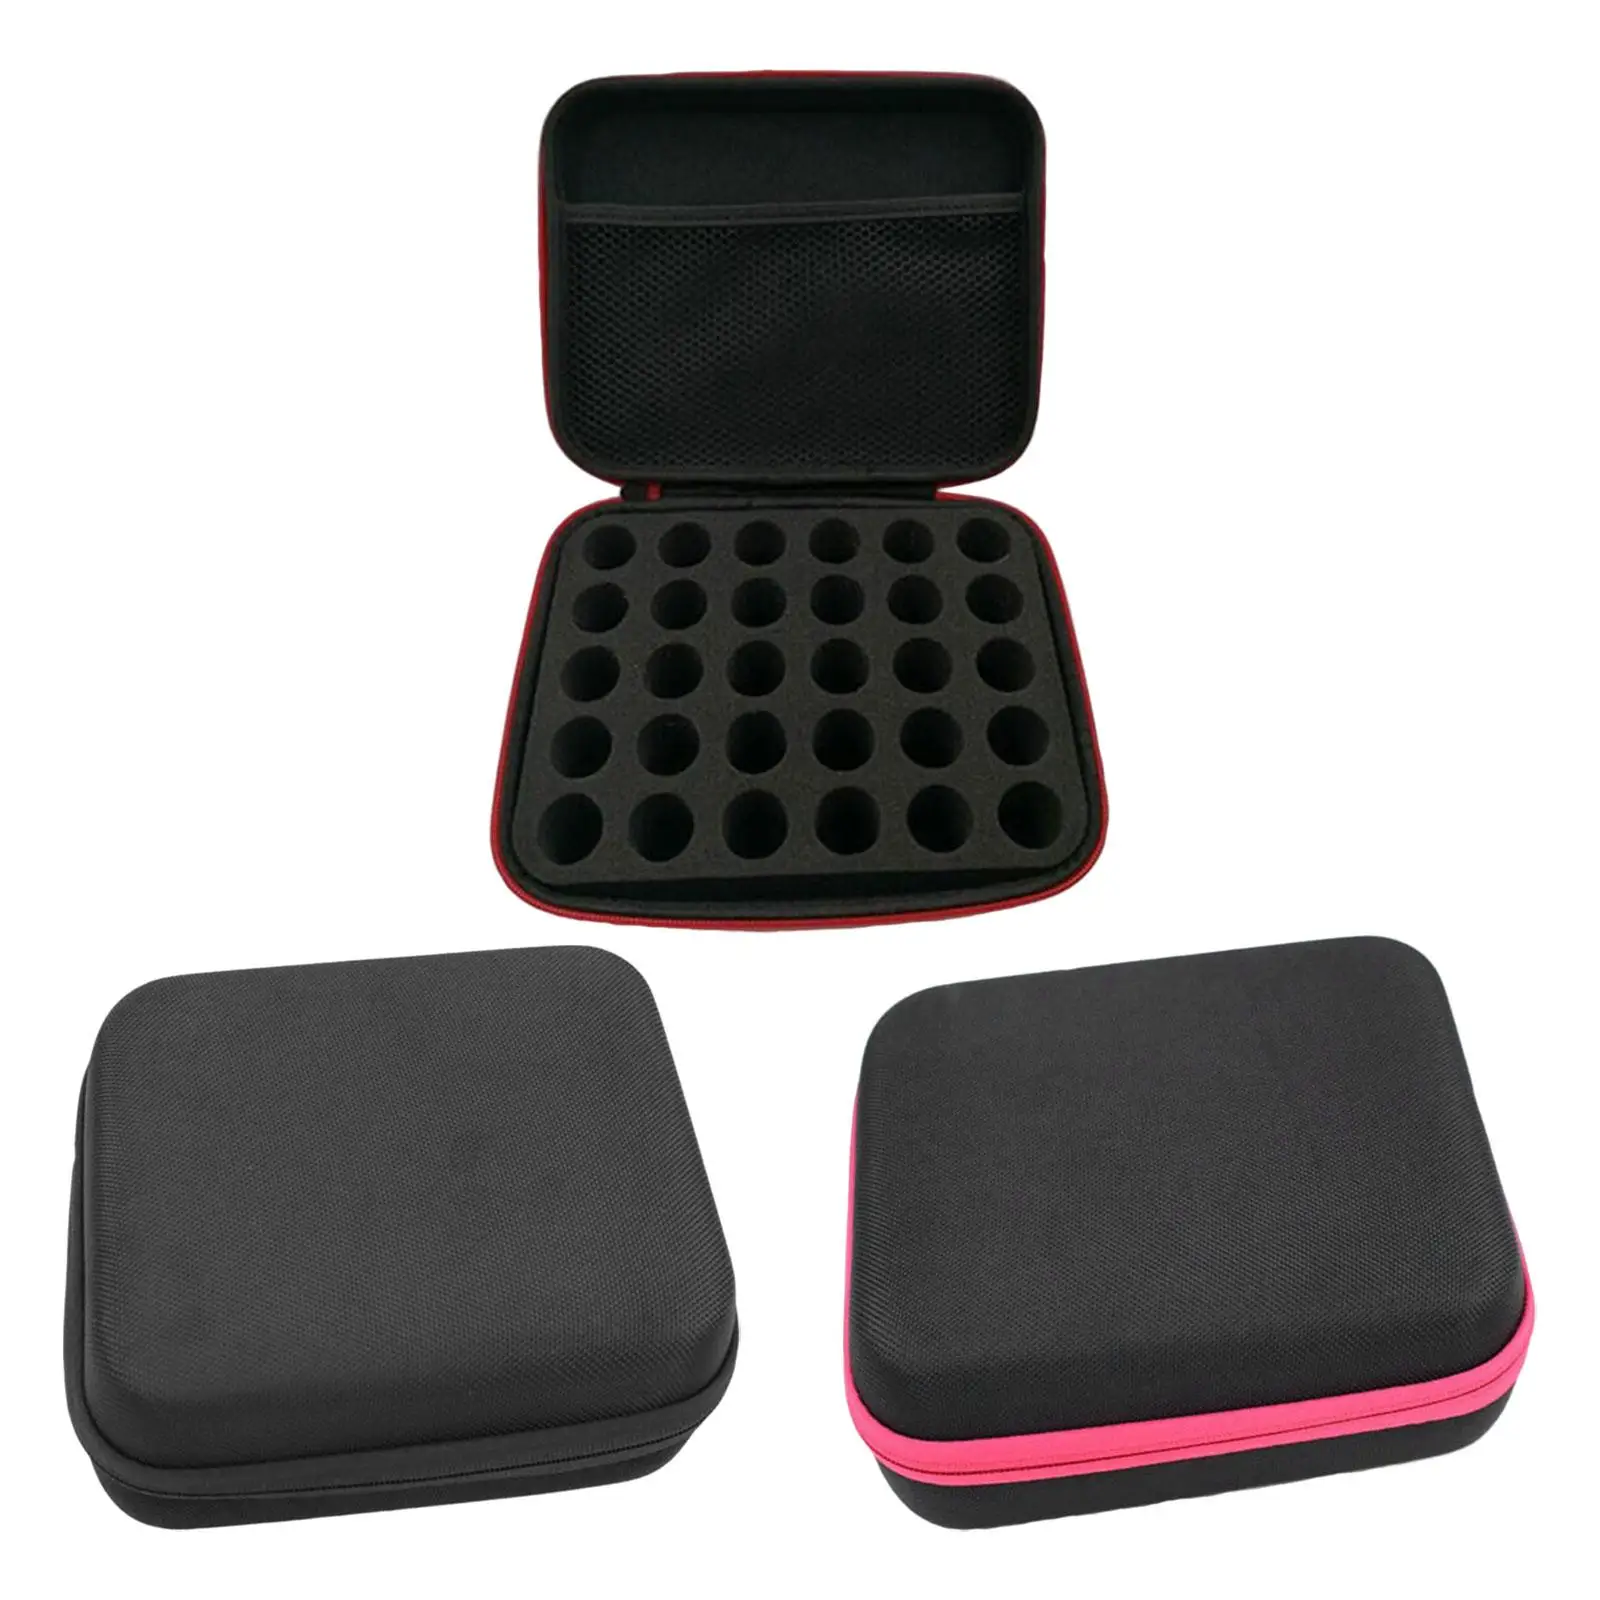  Oil Case EVA Portable Organizer Bag Impact Resistant Multipurpose Durable Dustproof Holder Box for Travel